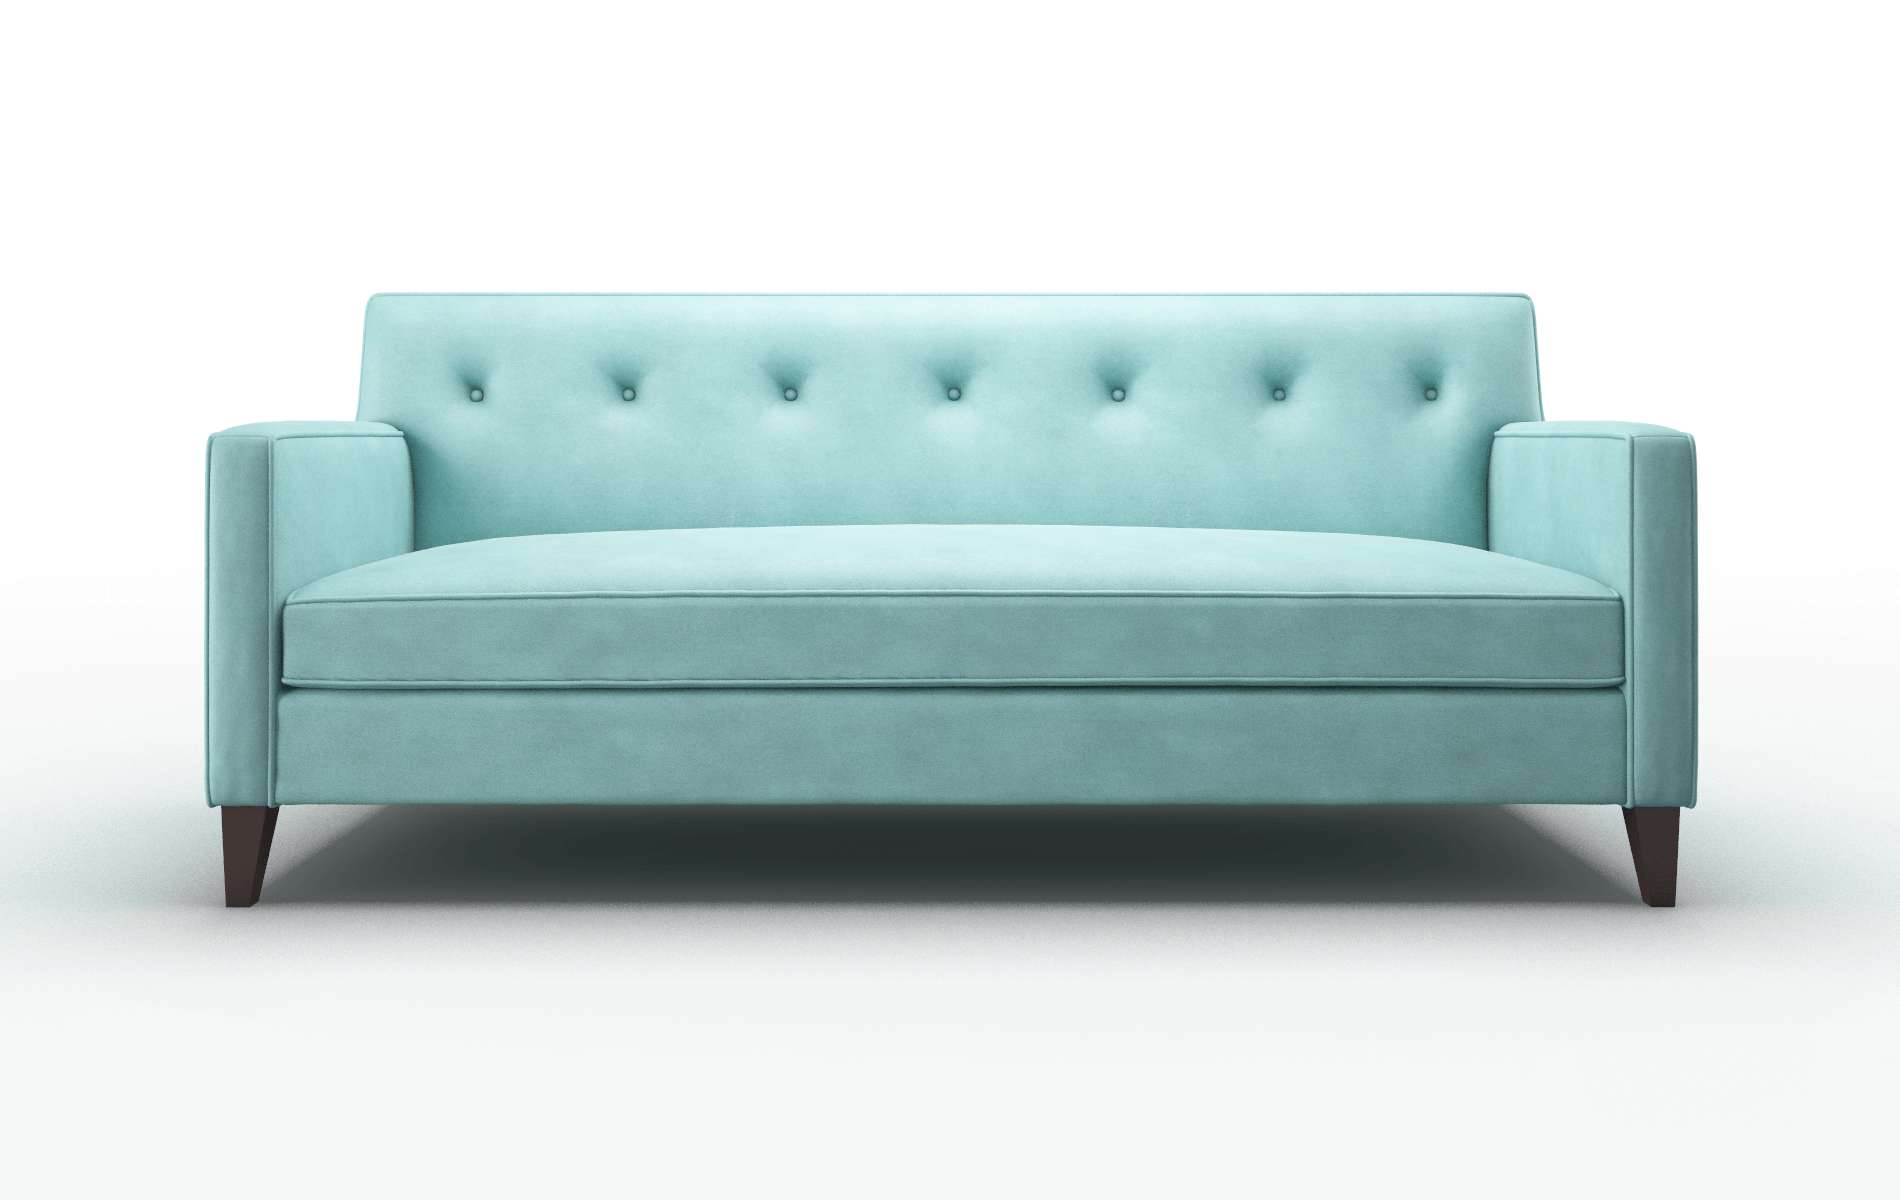 Harper Curious Turquoise Sofa espresso legs